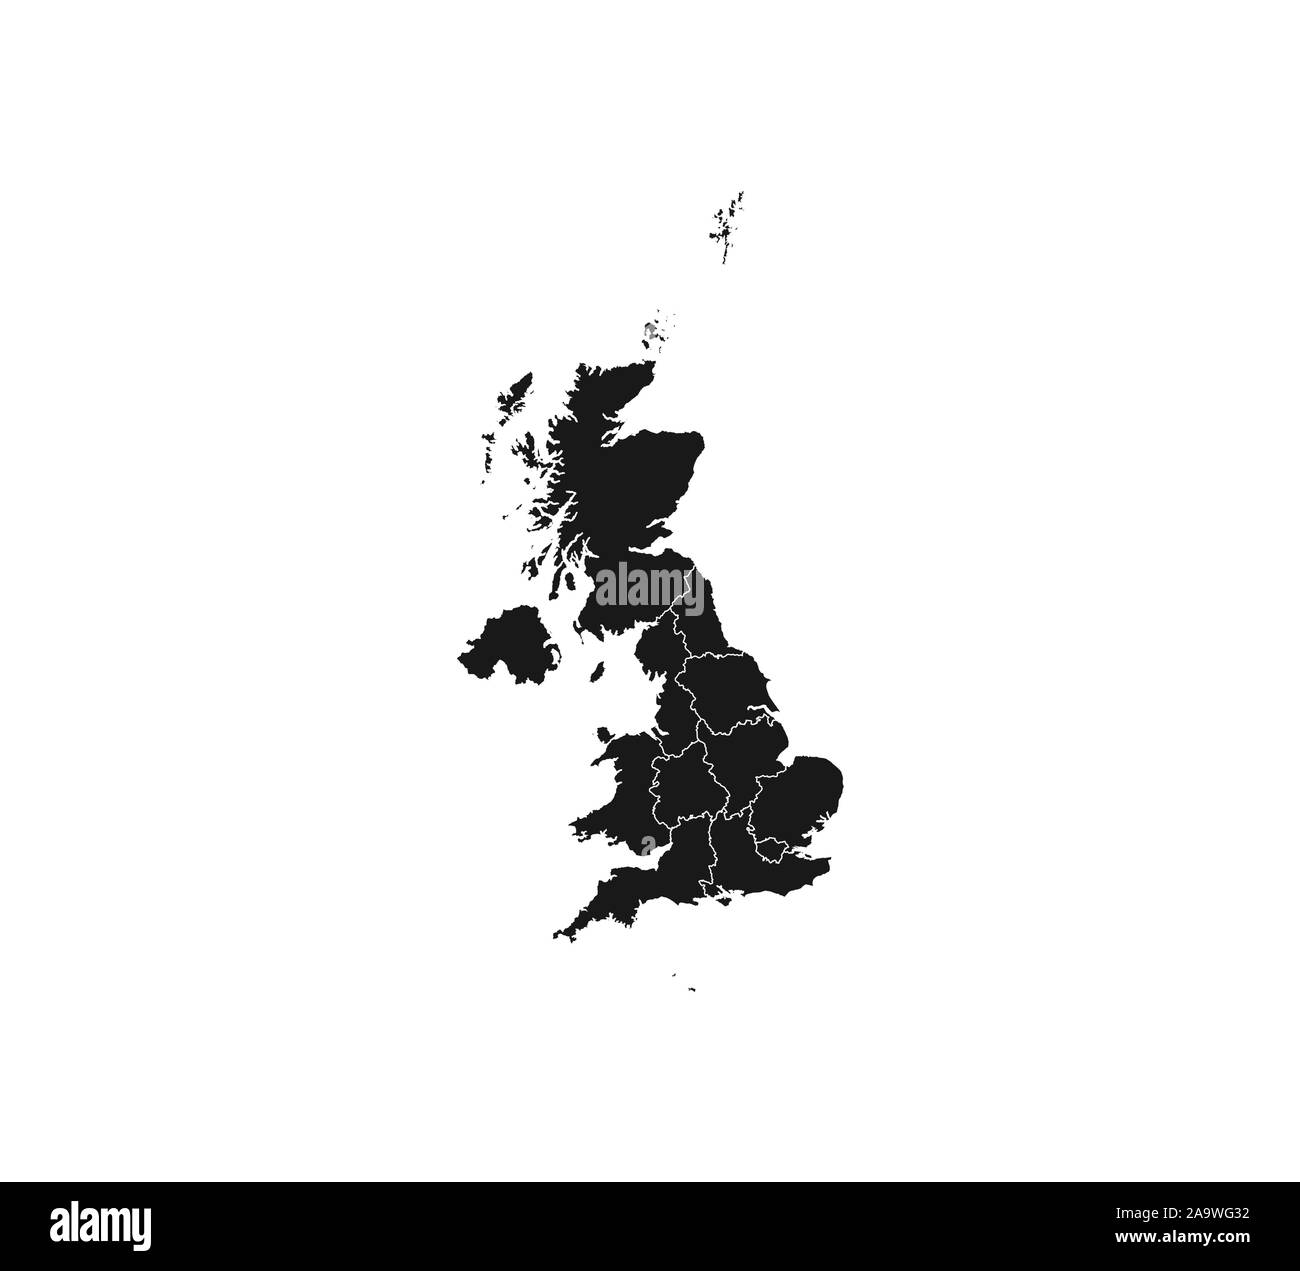 Royaume-uni carte sur fond blanc. Vector illustration. Illustration de Vecteur